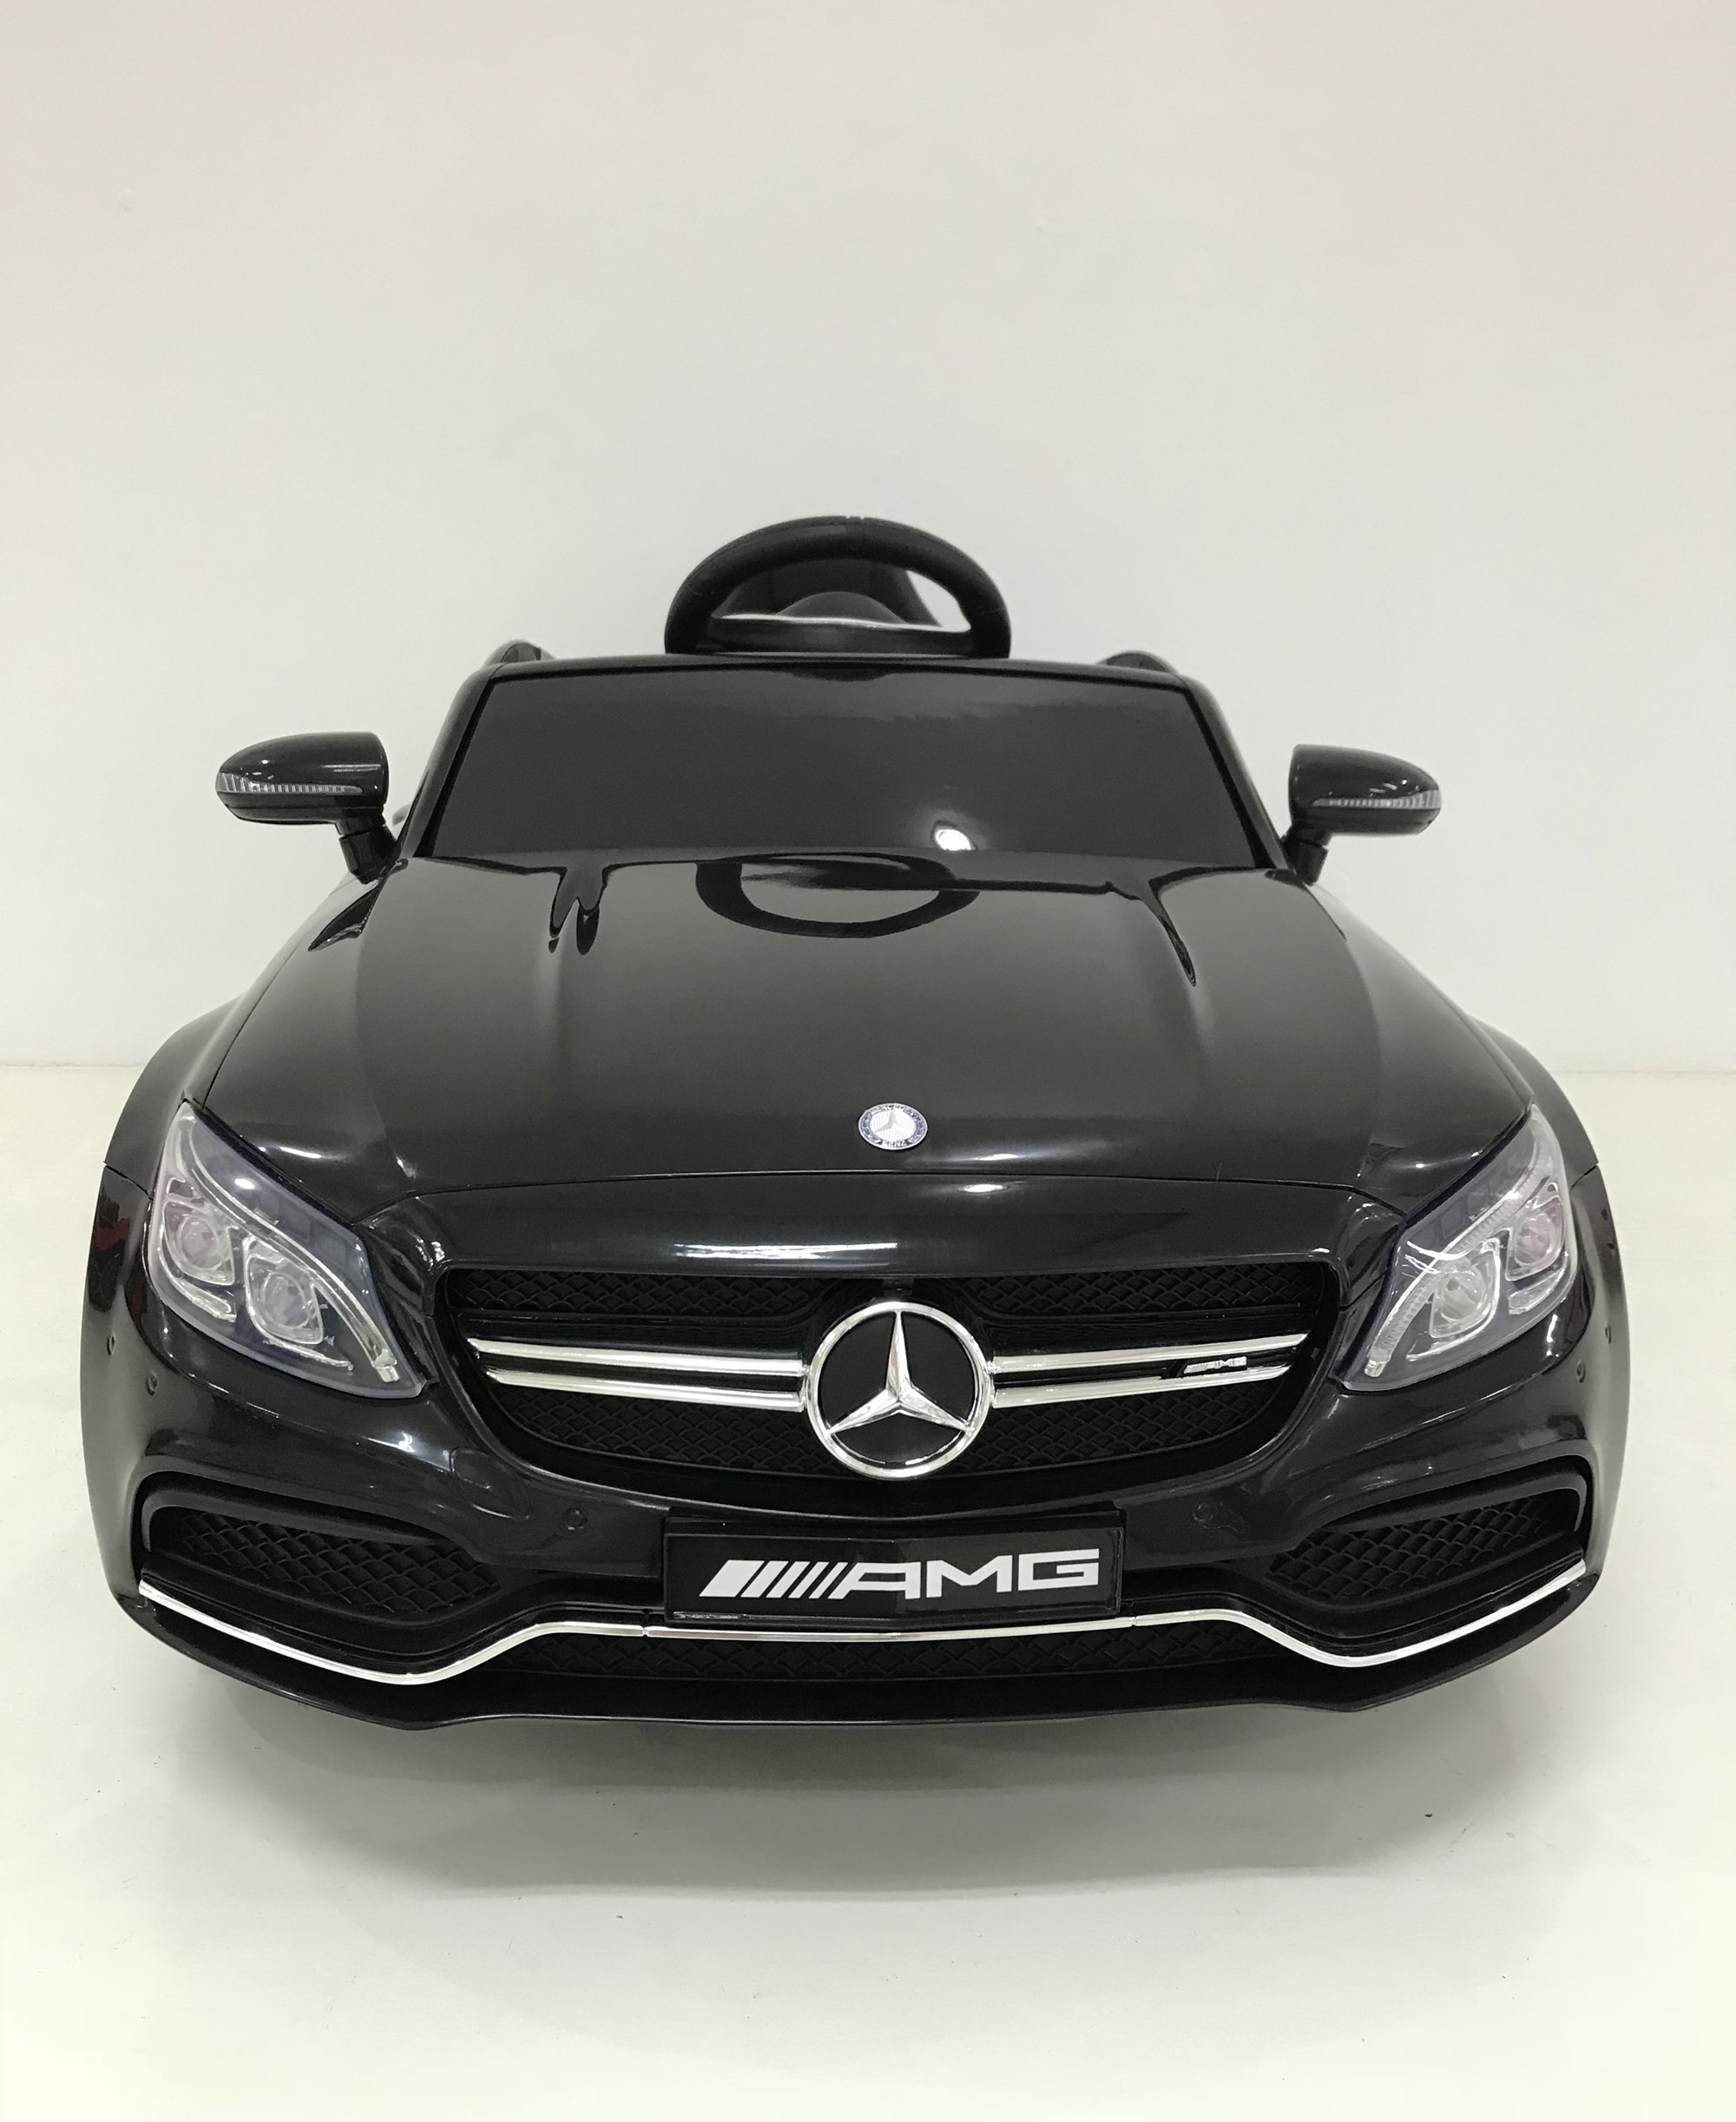 Licensed Mercedes C63 AMG – 12V Electric Ride On Car – Black